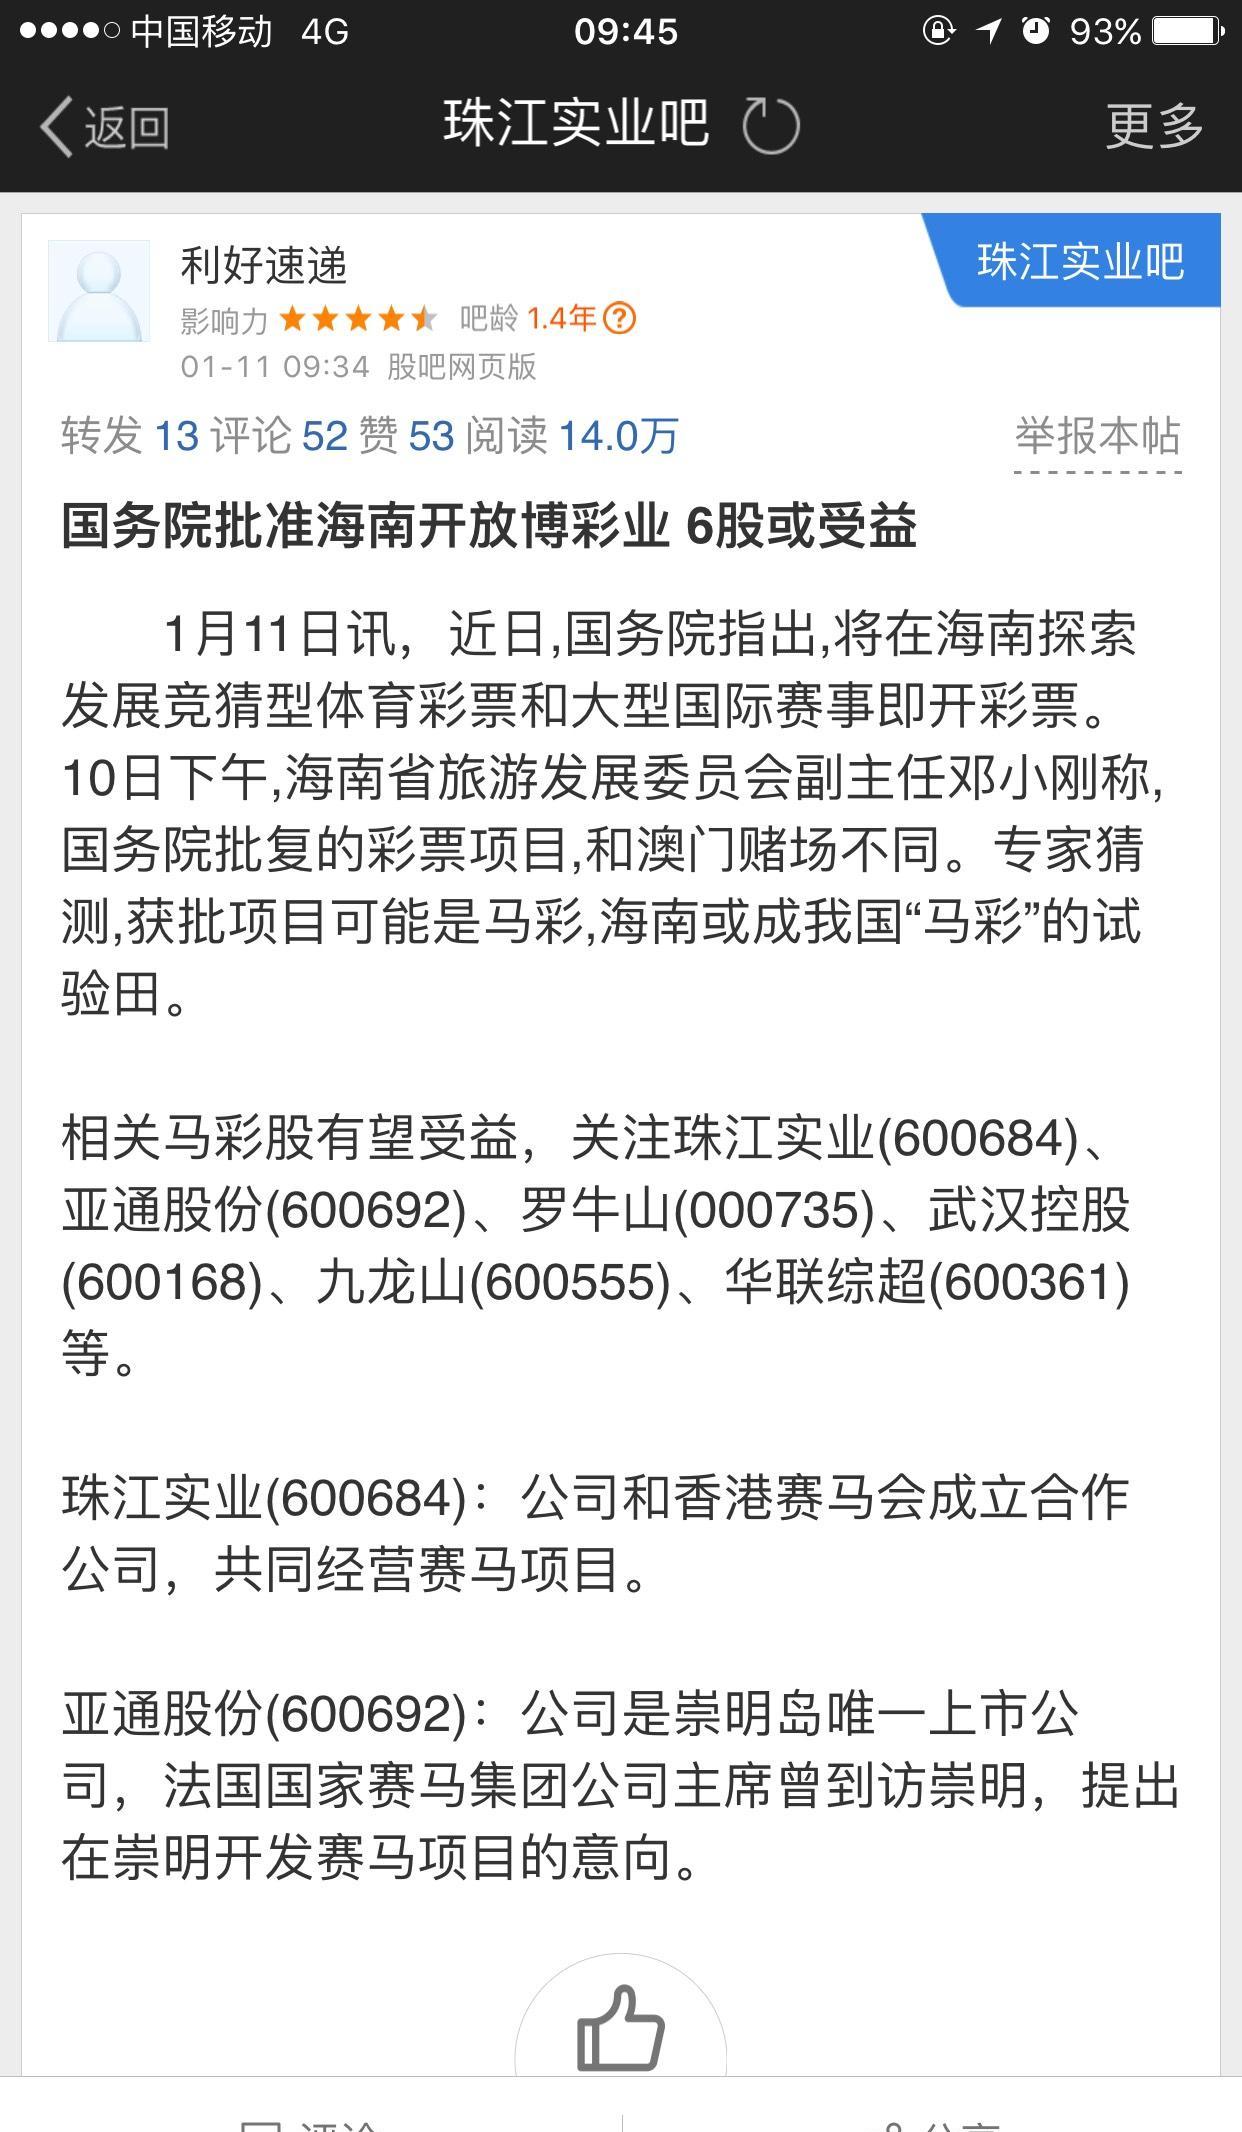 上海网警电话-上海网警110在线咨询-上海网警